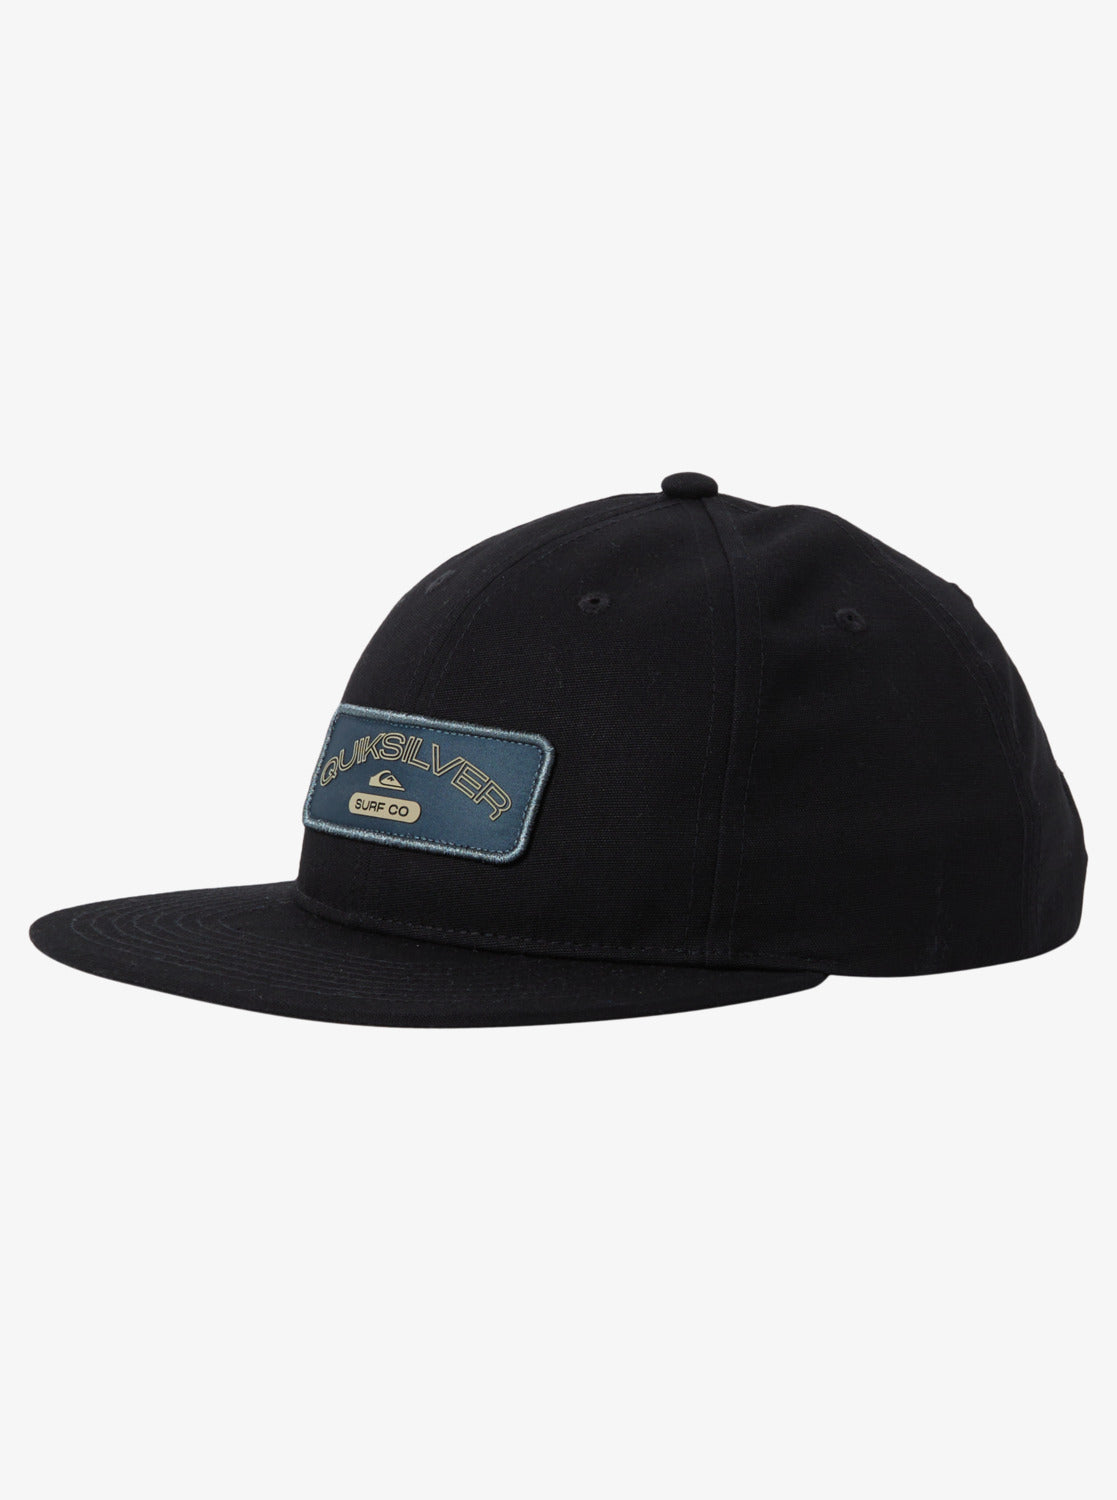 Homestead Snapback Hat - Black